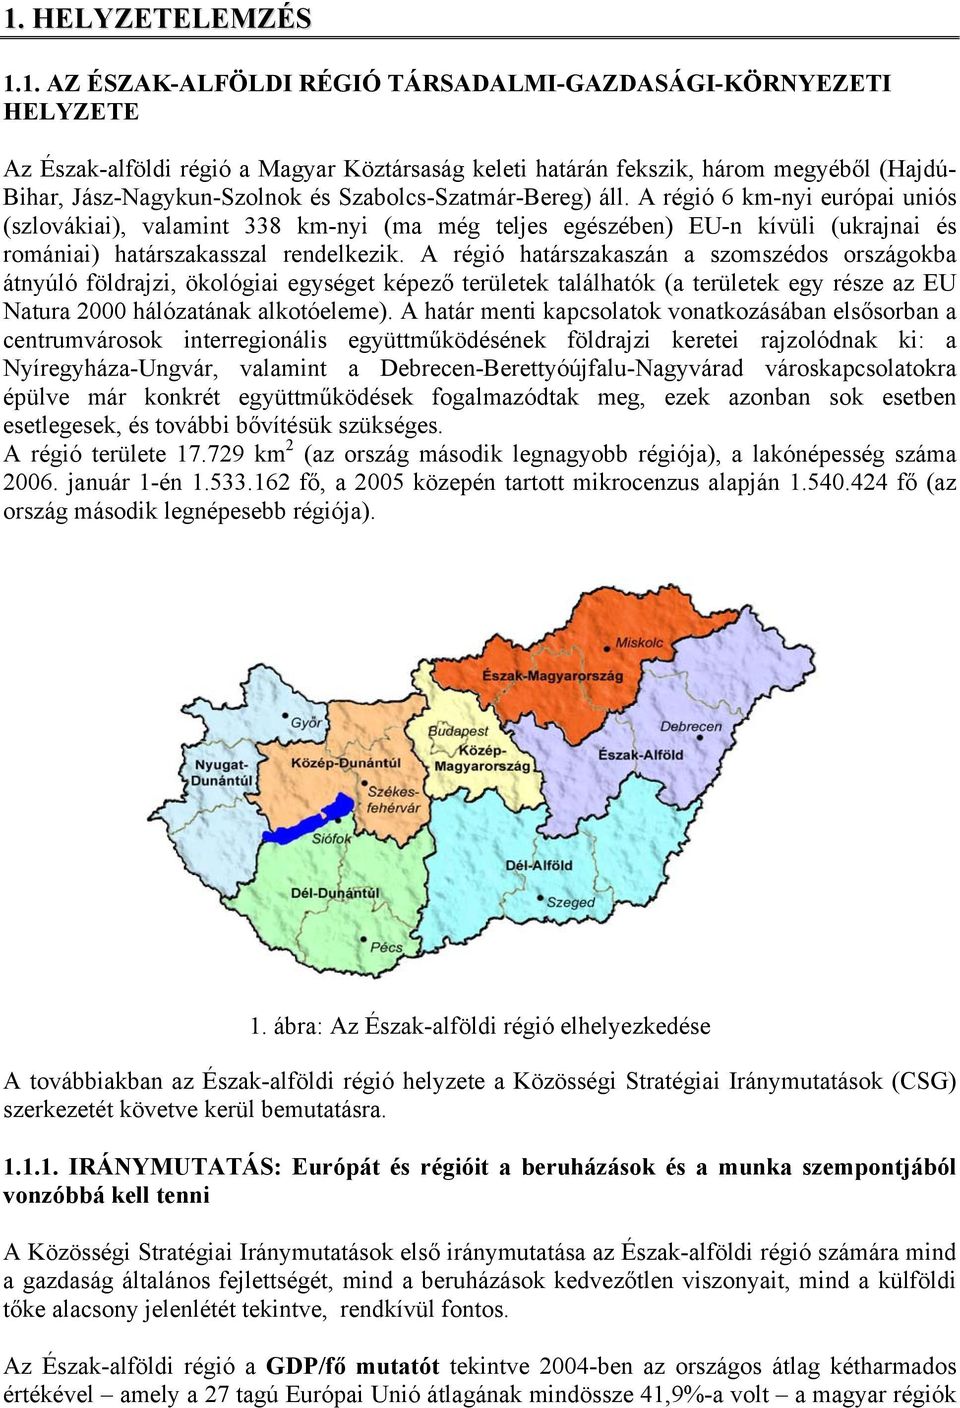 A régió 6 km-nyi európai uniós (szlovákiai), valamint 338 km-nyi (ma még teljes egészében) EU-n kívüli (ukrajnai és romániai) határszakasszal rendelkezik.